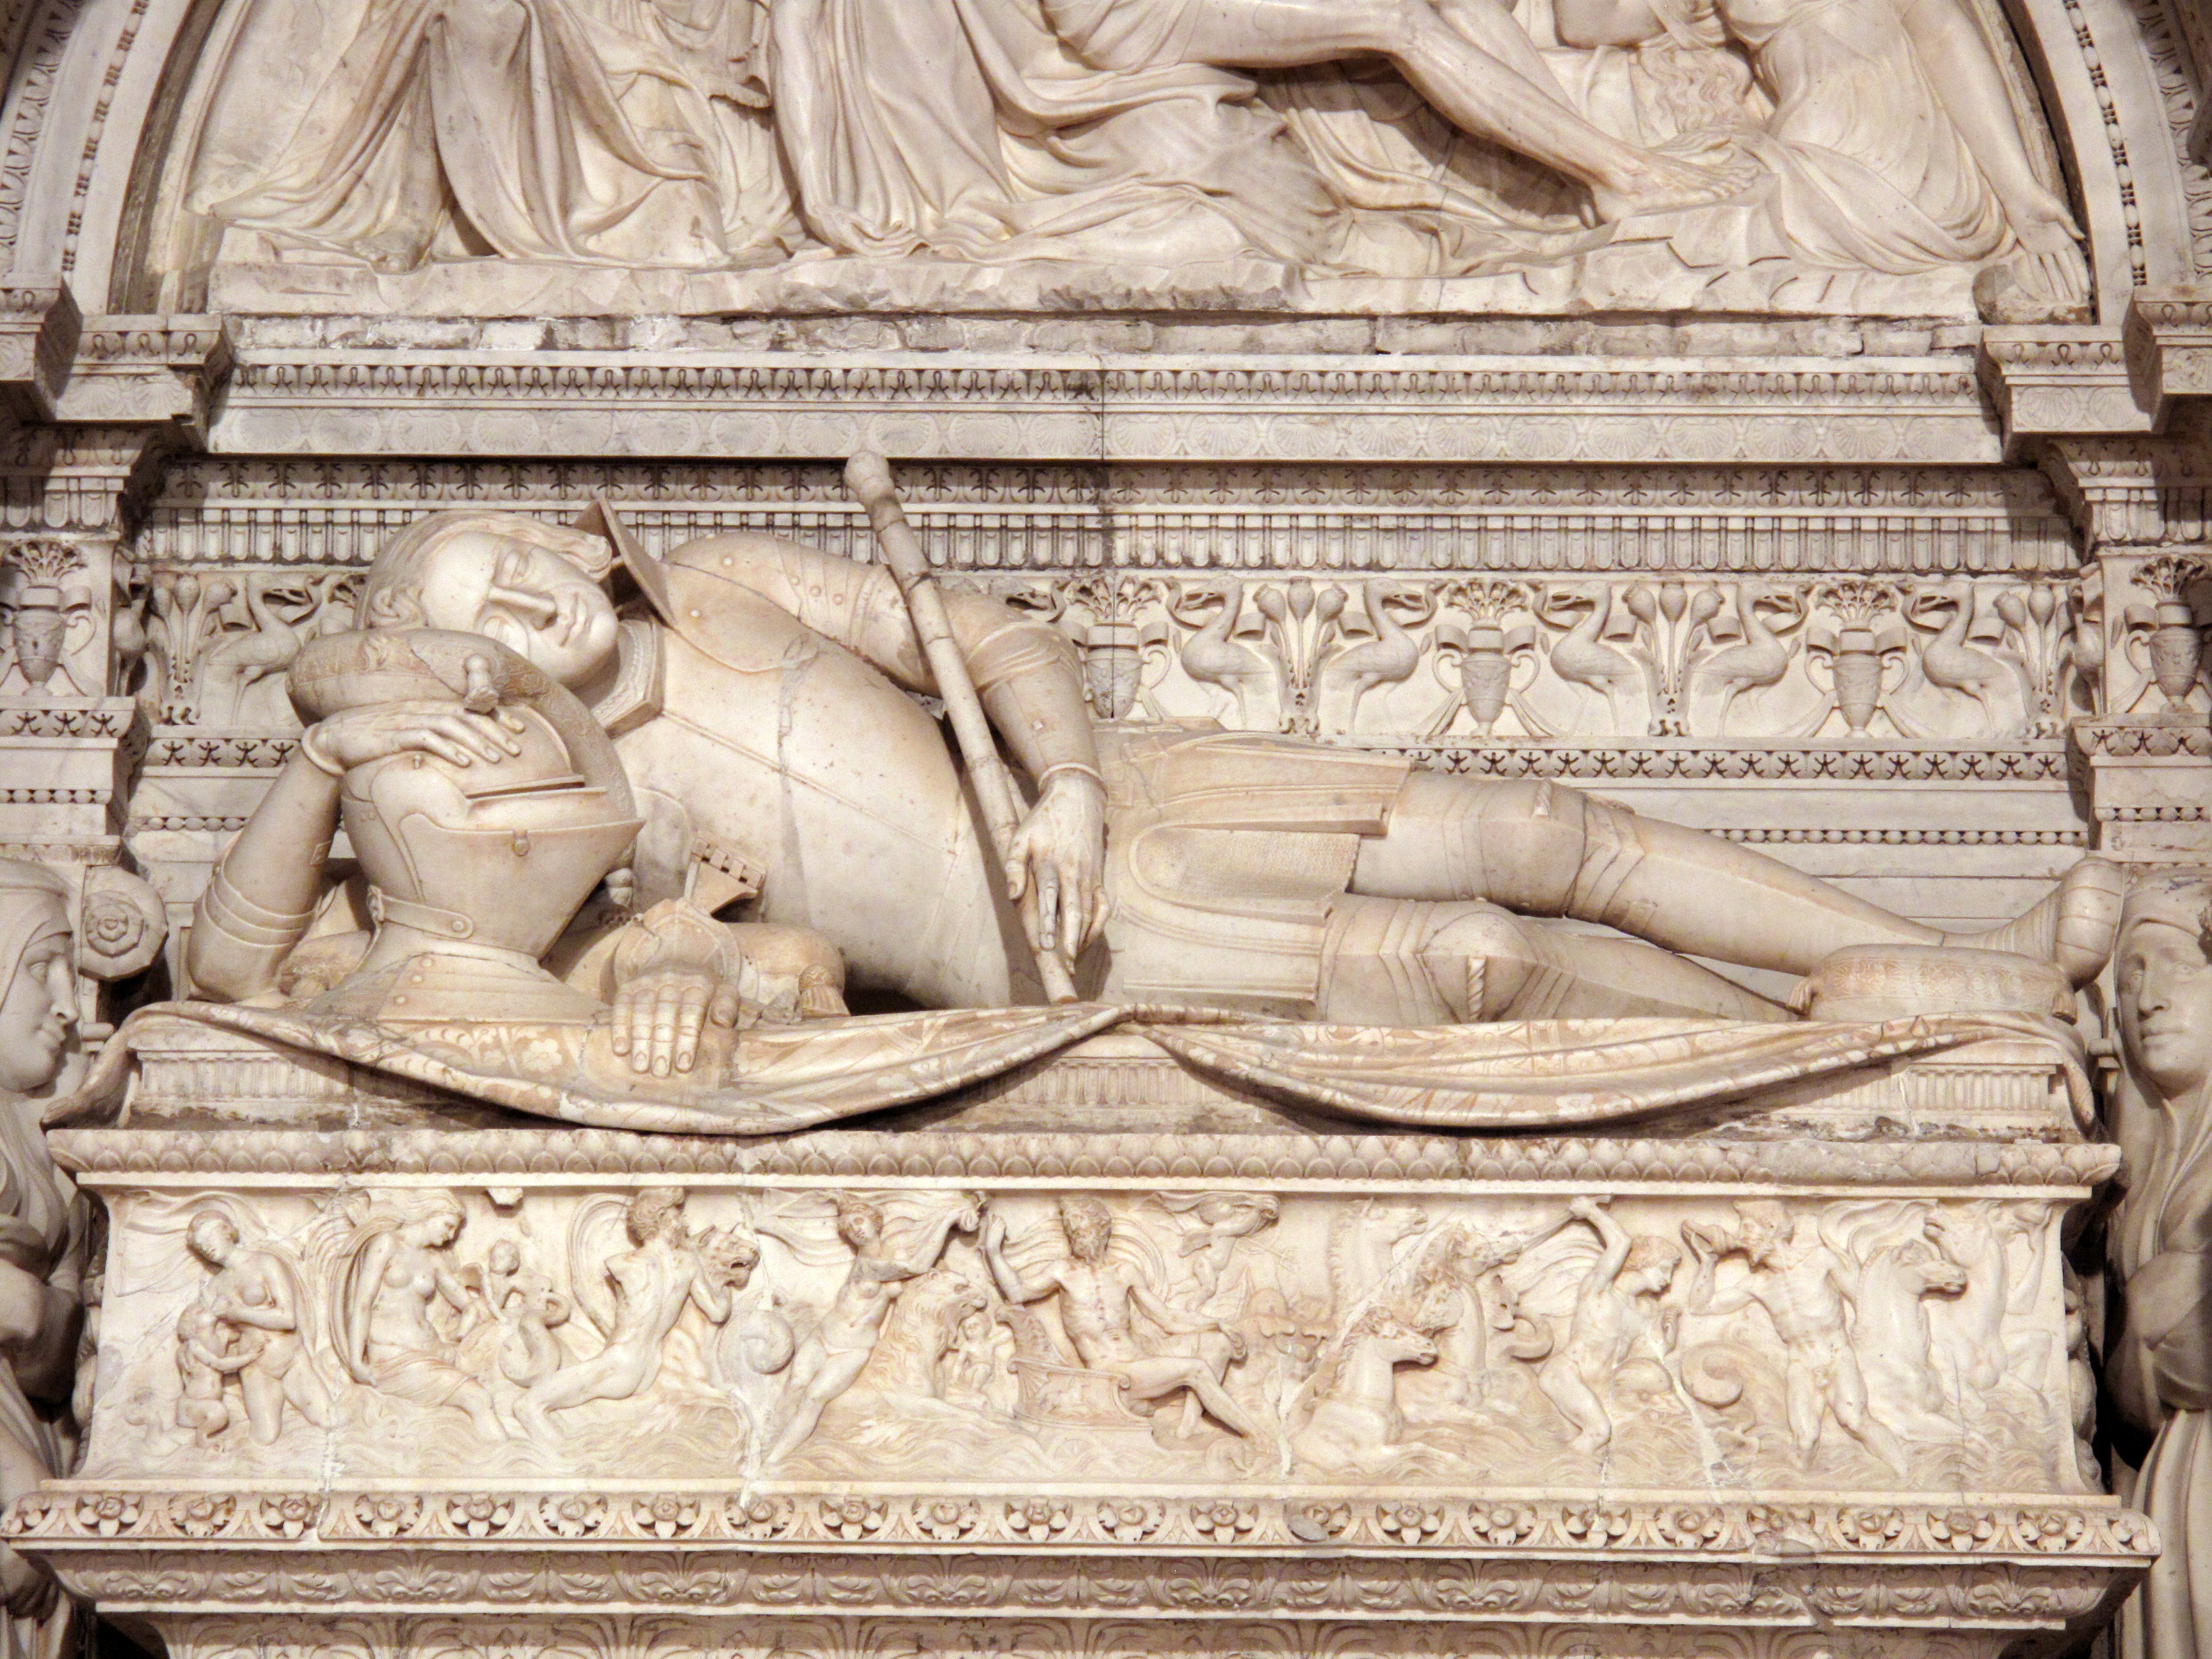 Sepulcro de Ramón Folc de Cardona-Anglesola (detalle), Giovanni da Nola